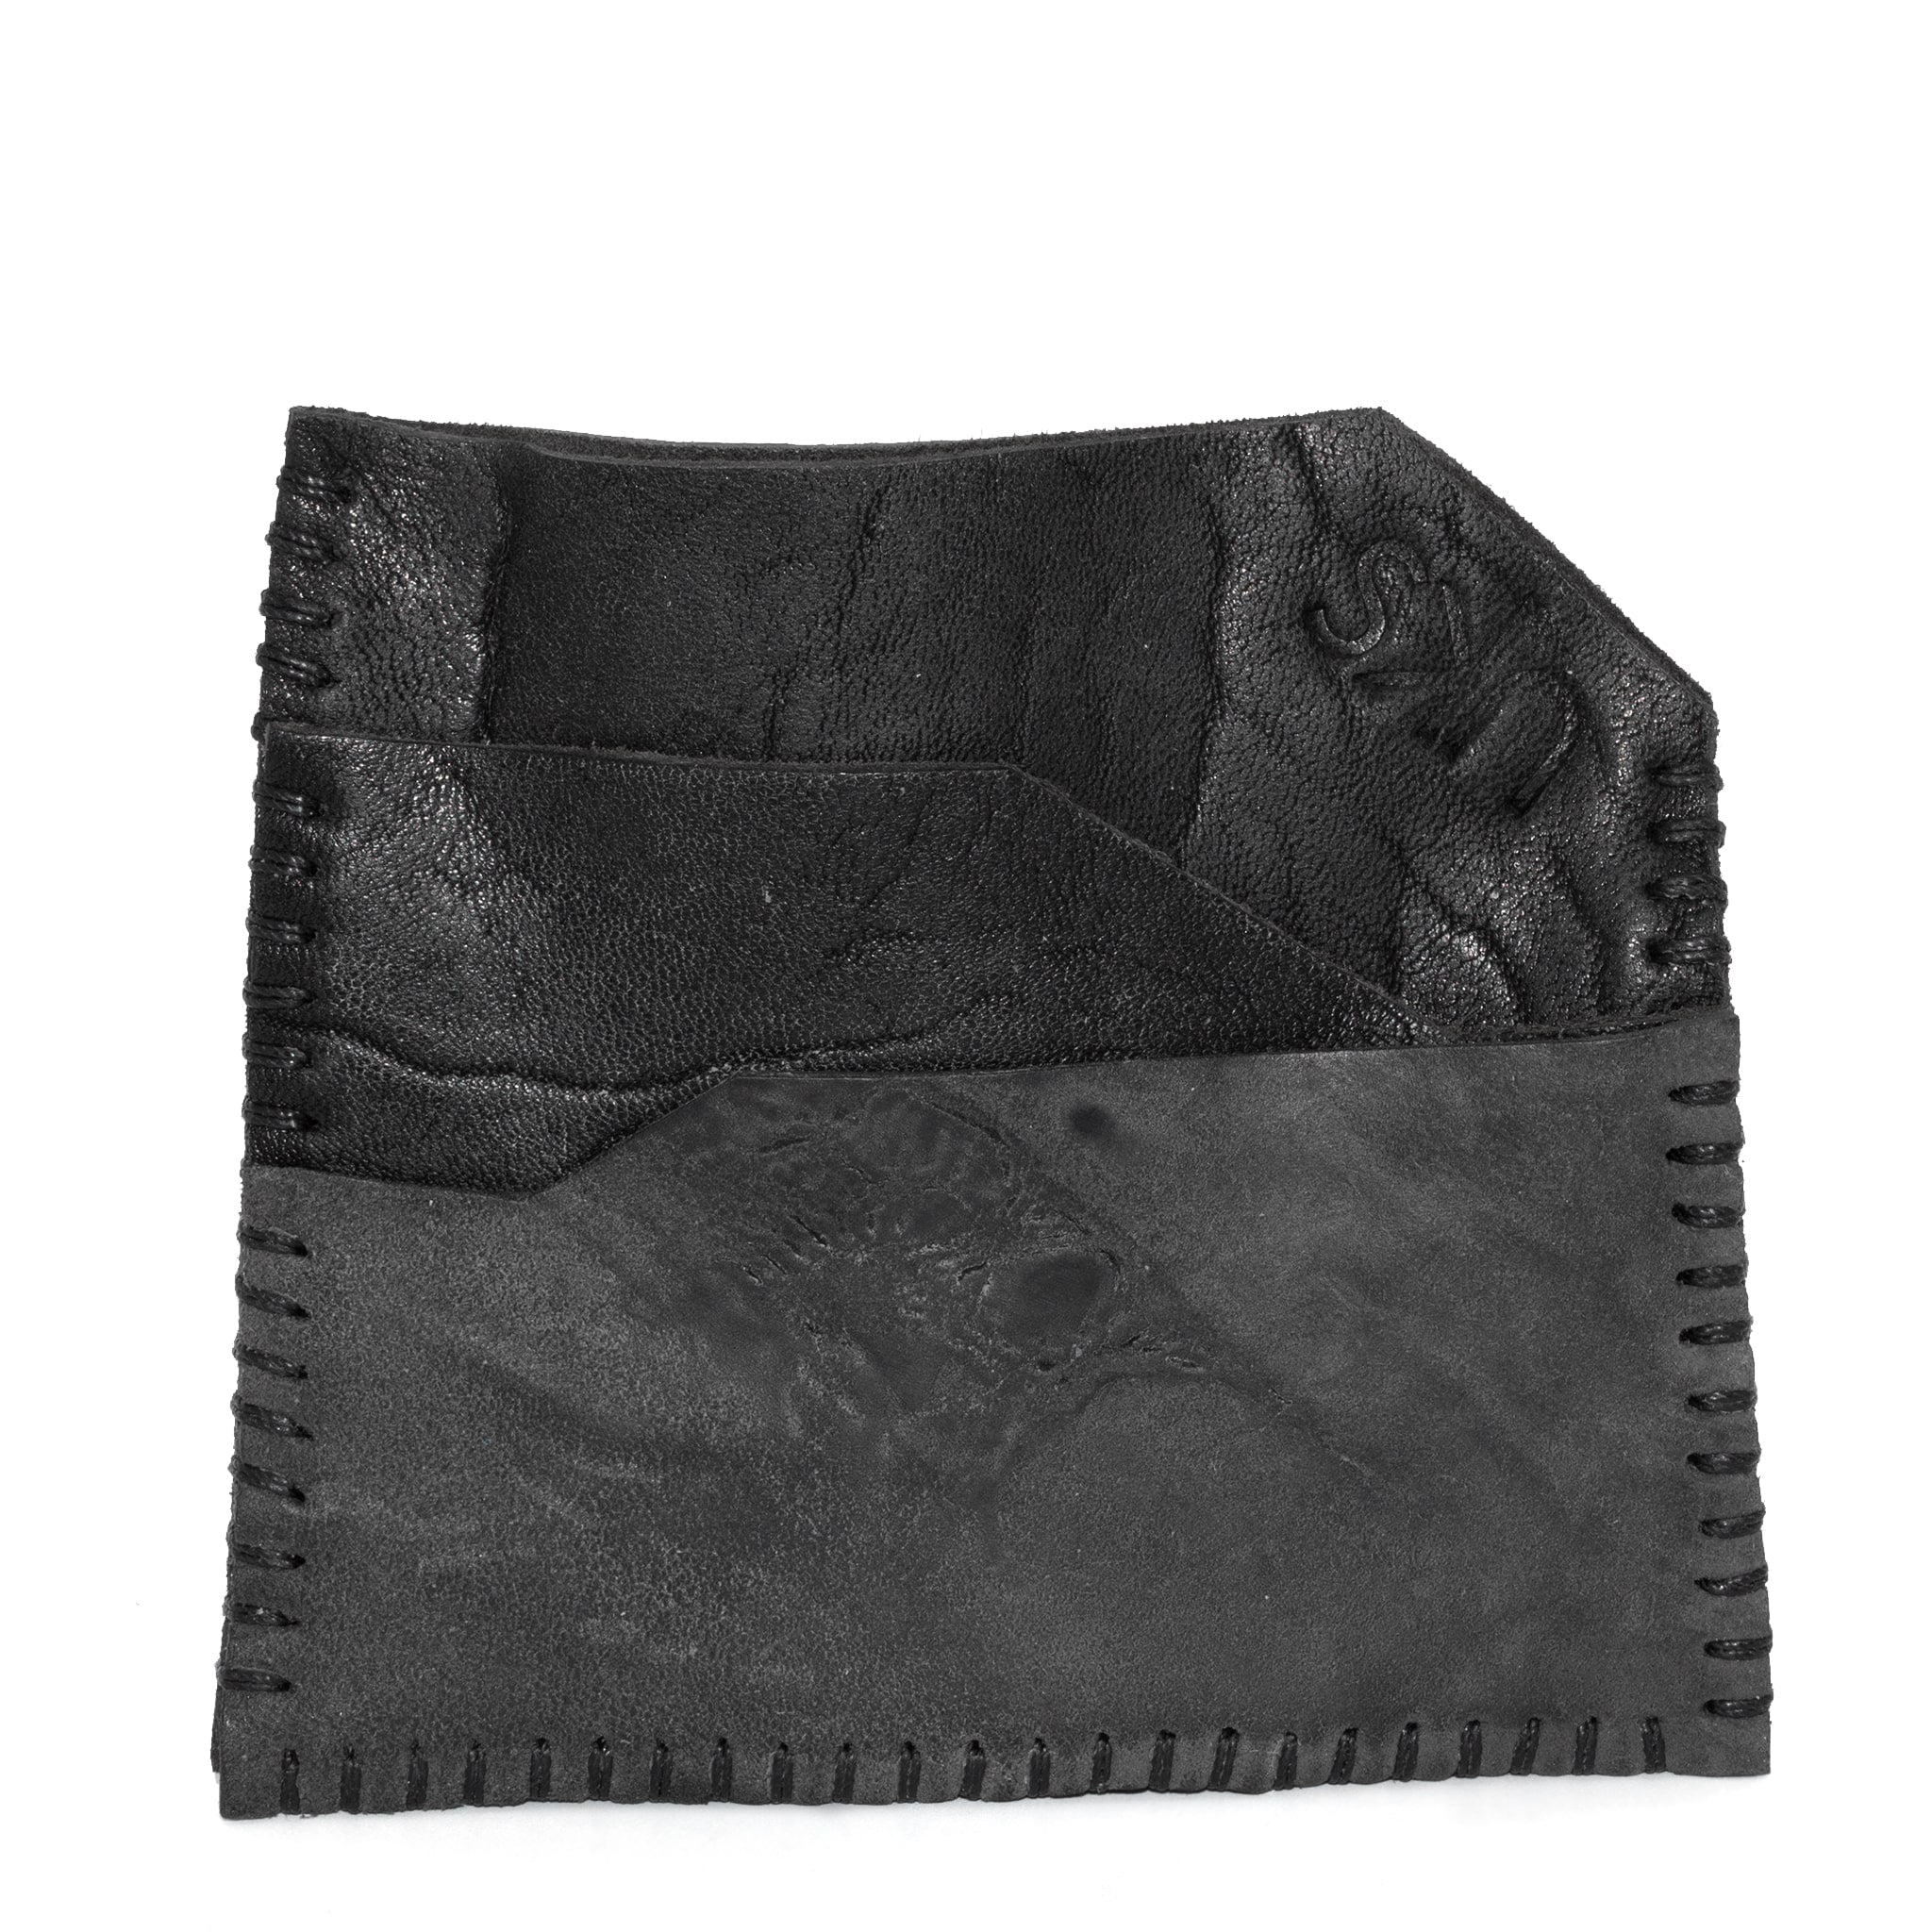 atelier skn black horse culatta leather cardholder